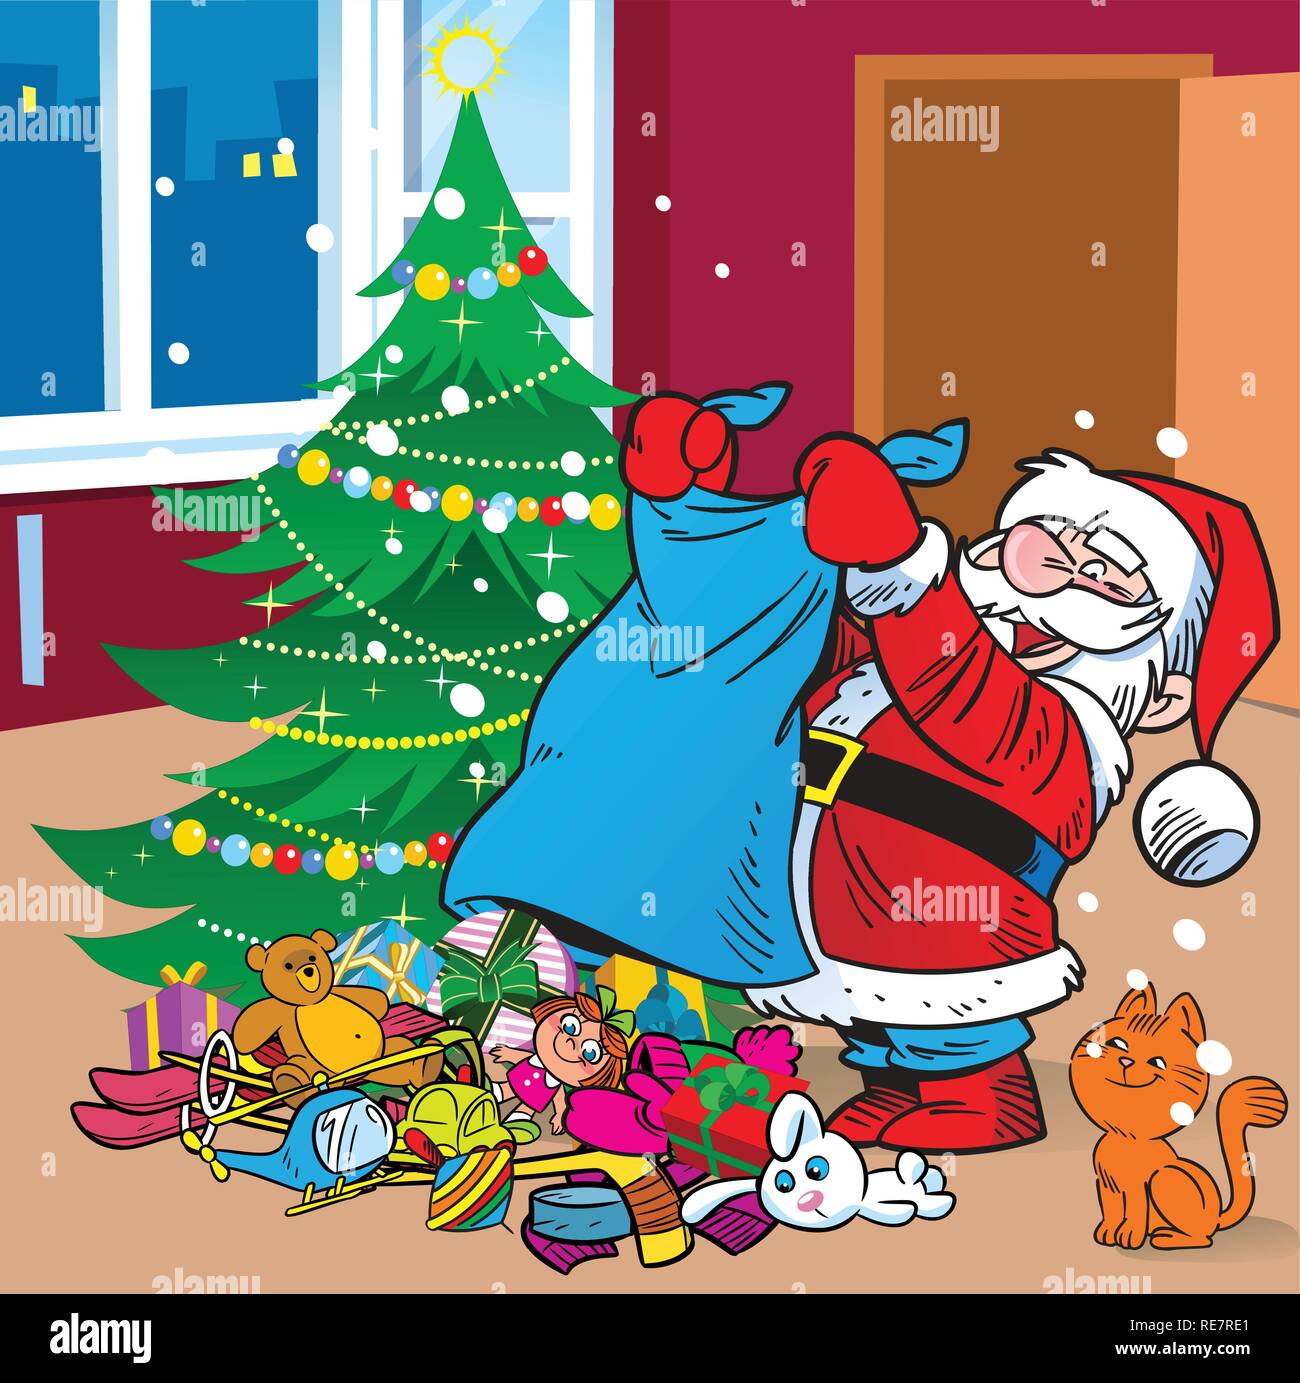 L'illustration présente le Père Noël, qui a porté le sac de cadeaux sous l'arbre de Noël.illustration faite sur des calques distincts. Illustration de Vecteur